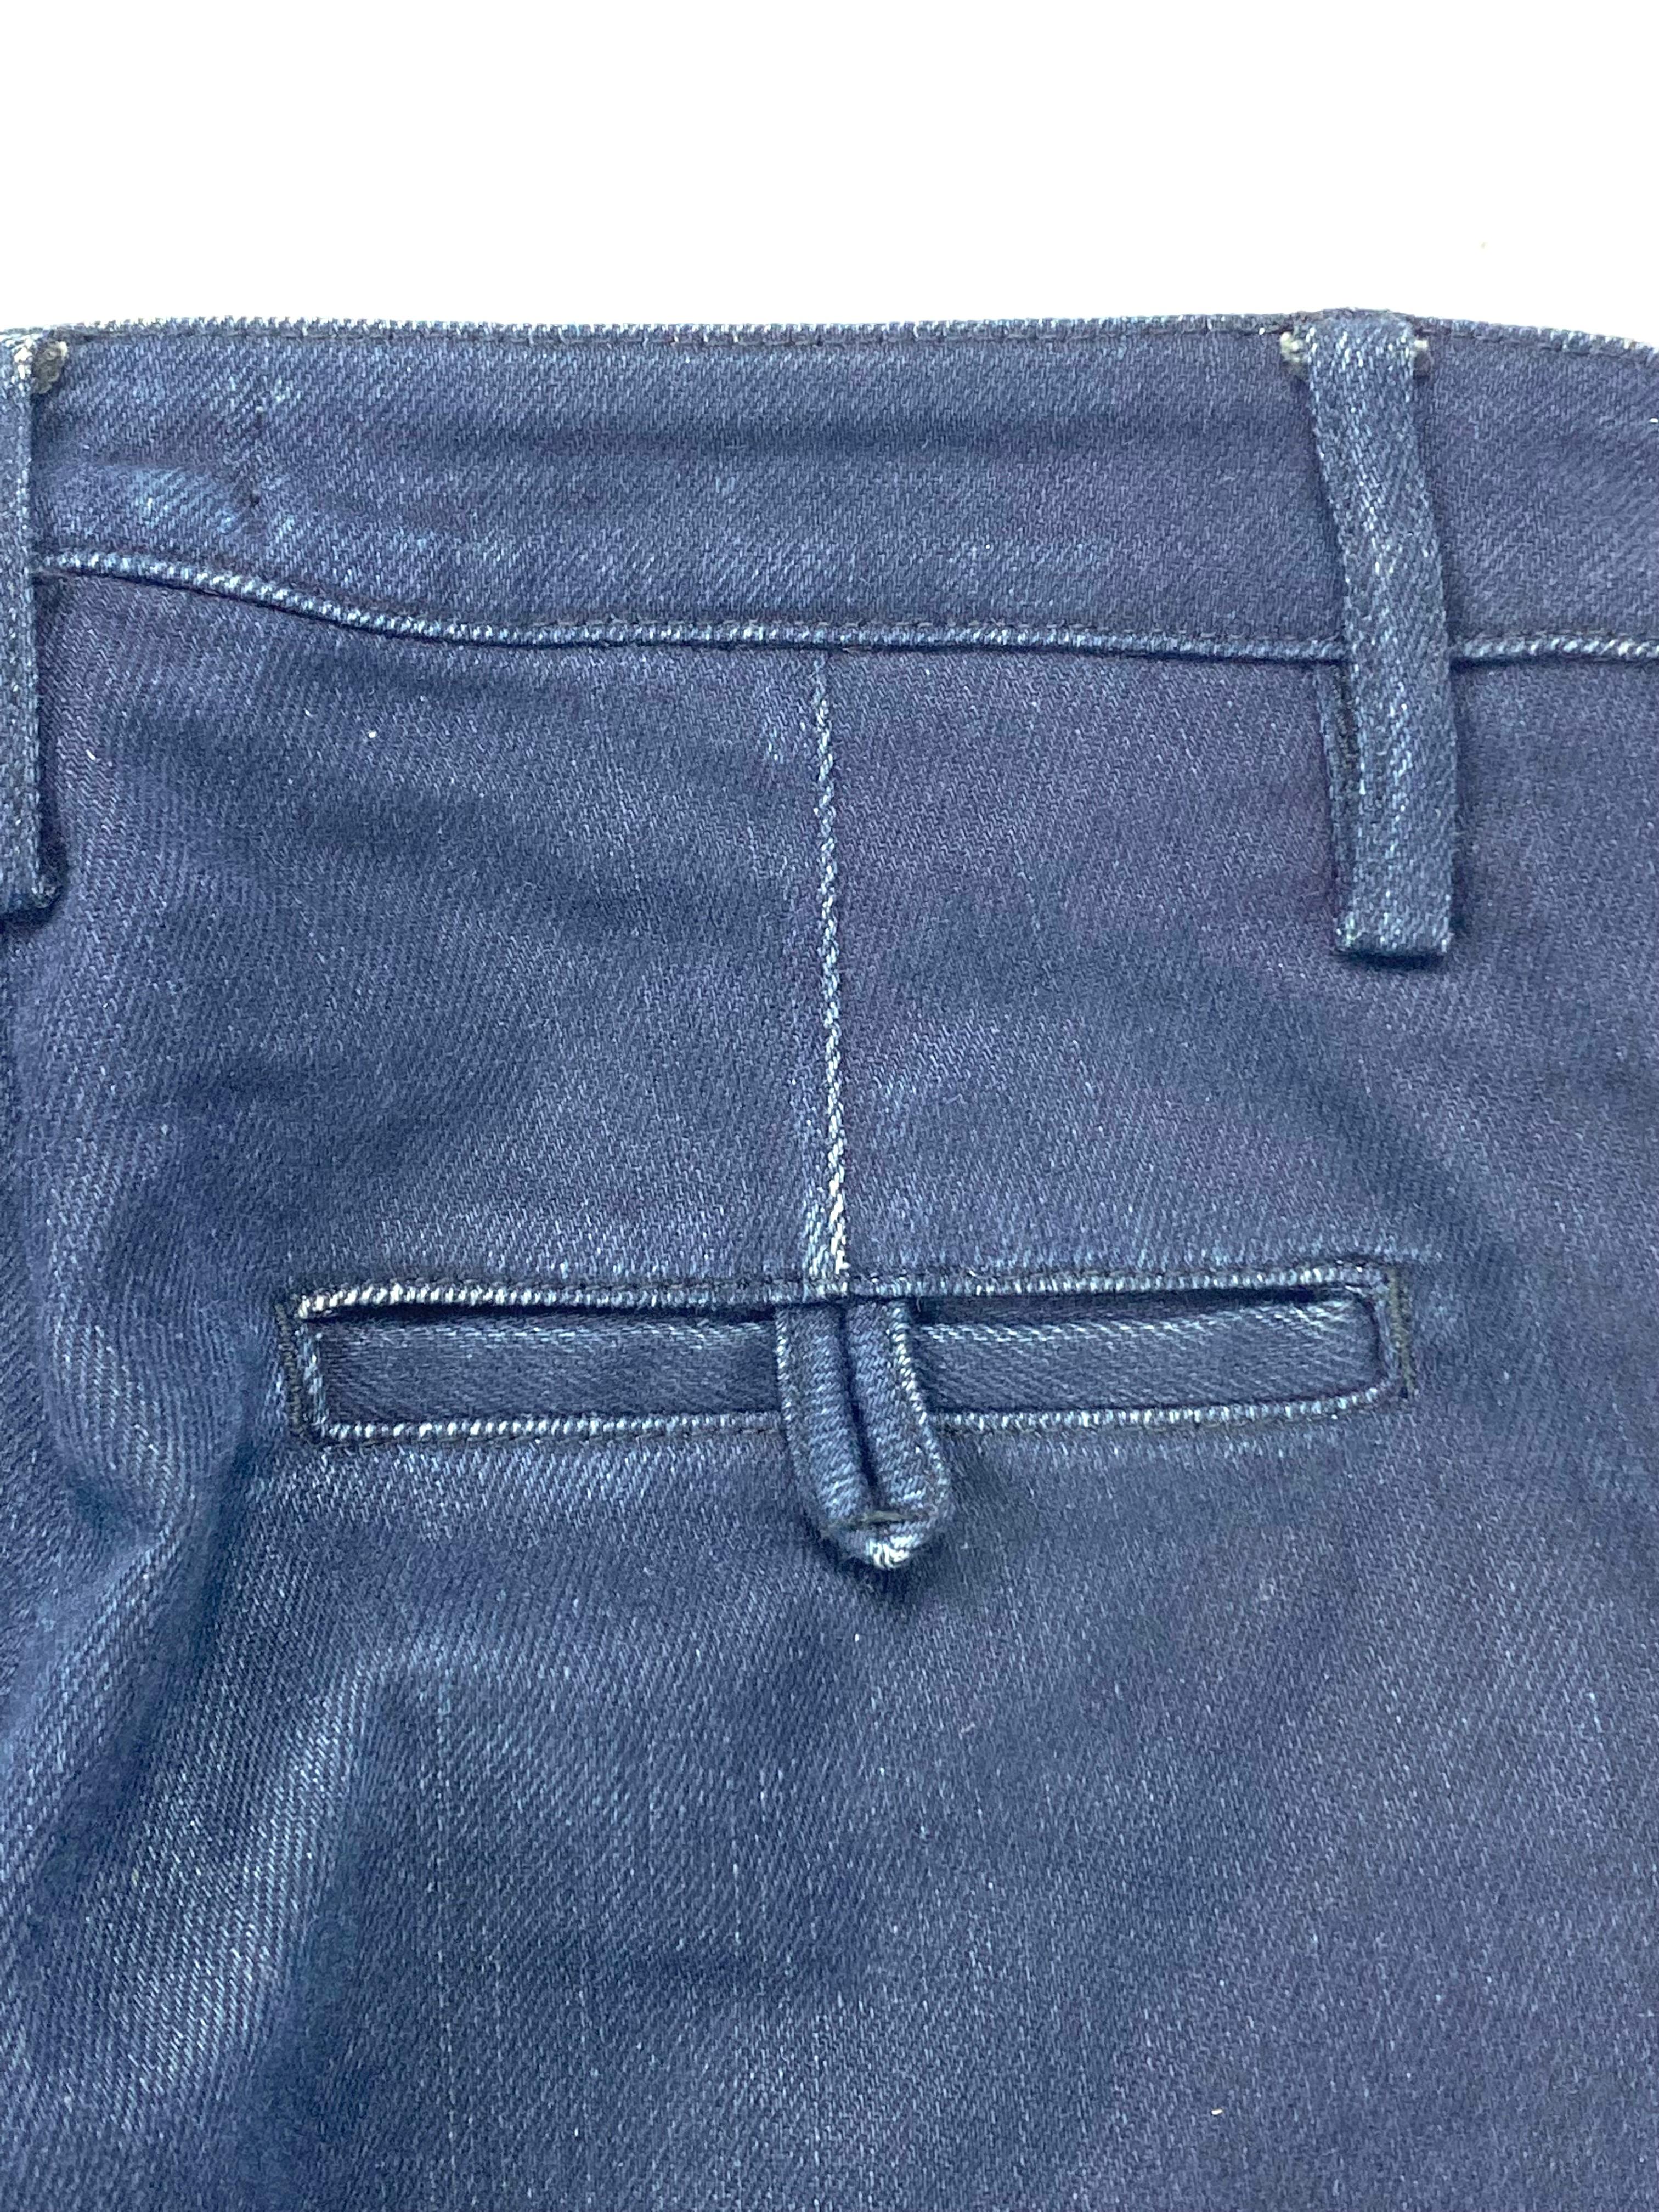 Women's Acne Joy Sharp Blue Denim Jeans Pants, Size 25/32 For Sale